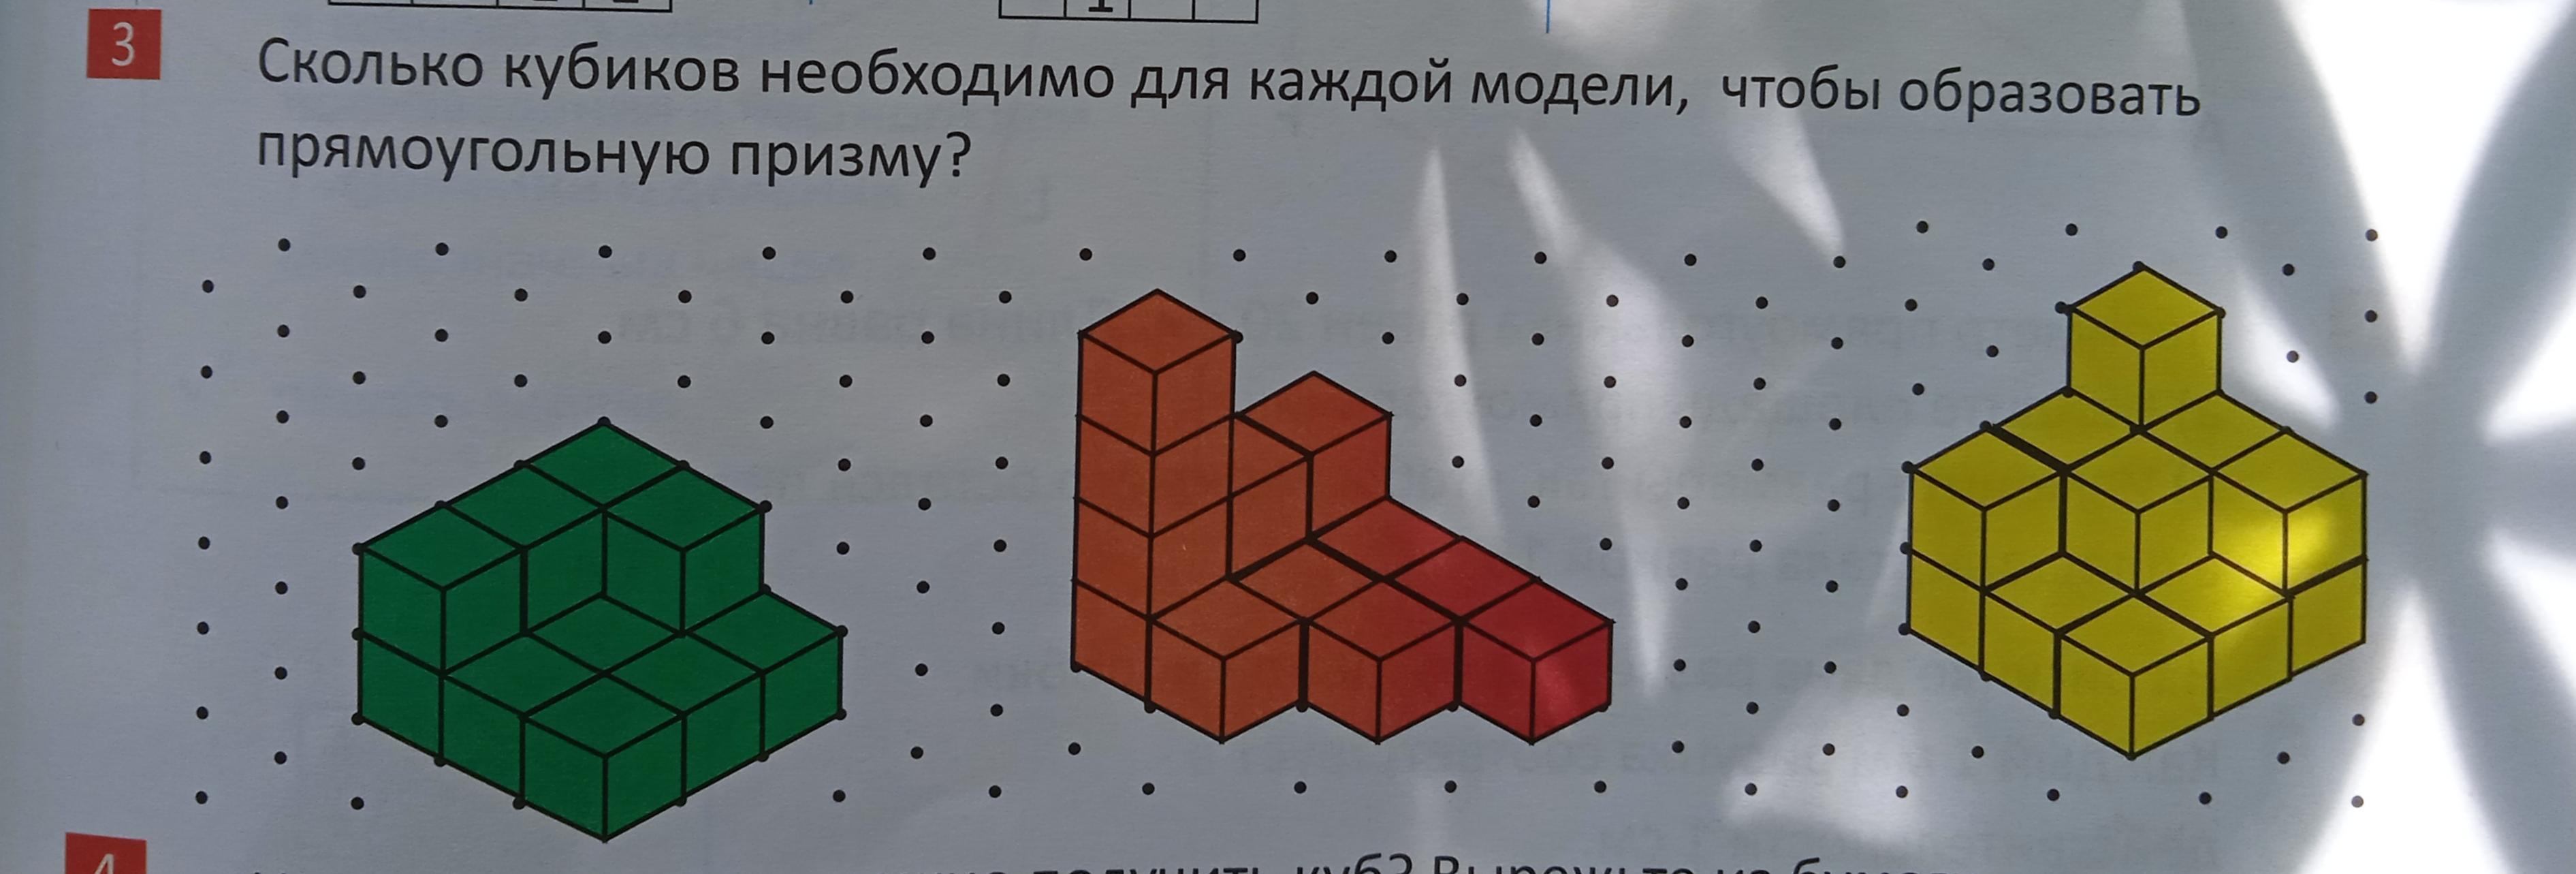 Сколько кубиков использовано для построения